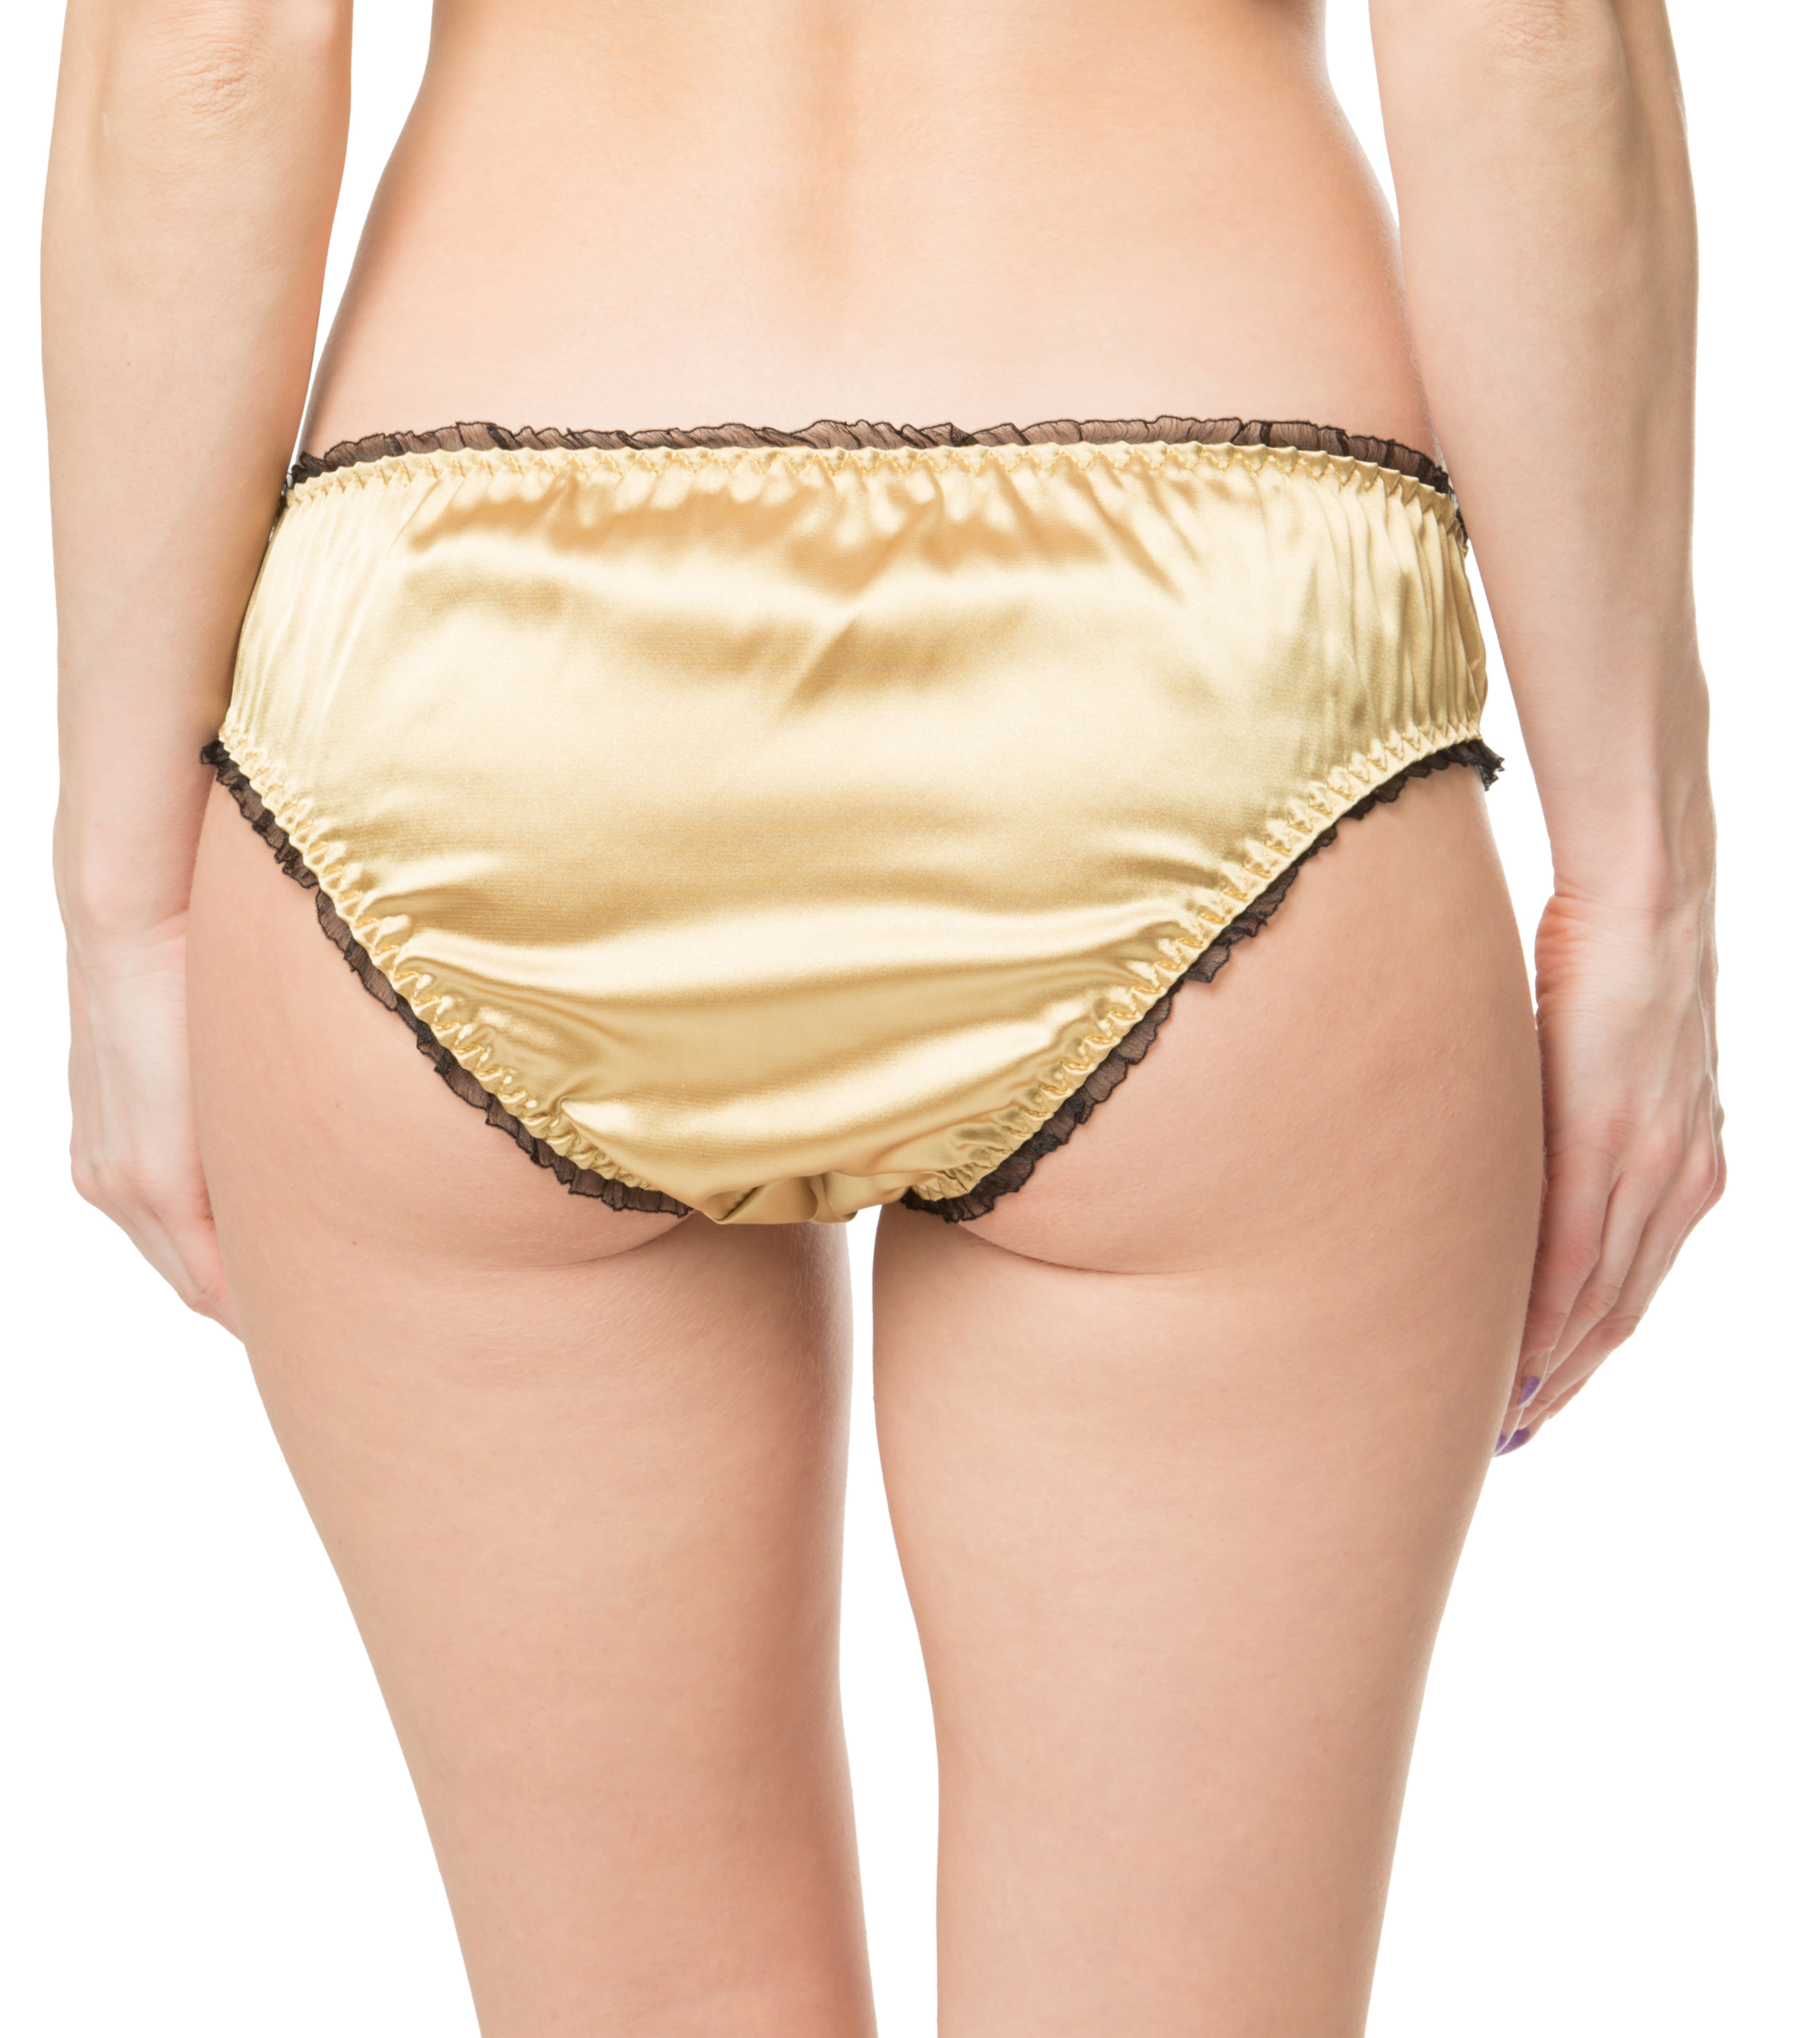 Satin Frilly Sissy Panties Bikini Knicker Underwear Briefs Uk Size